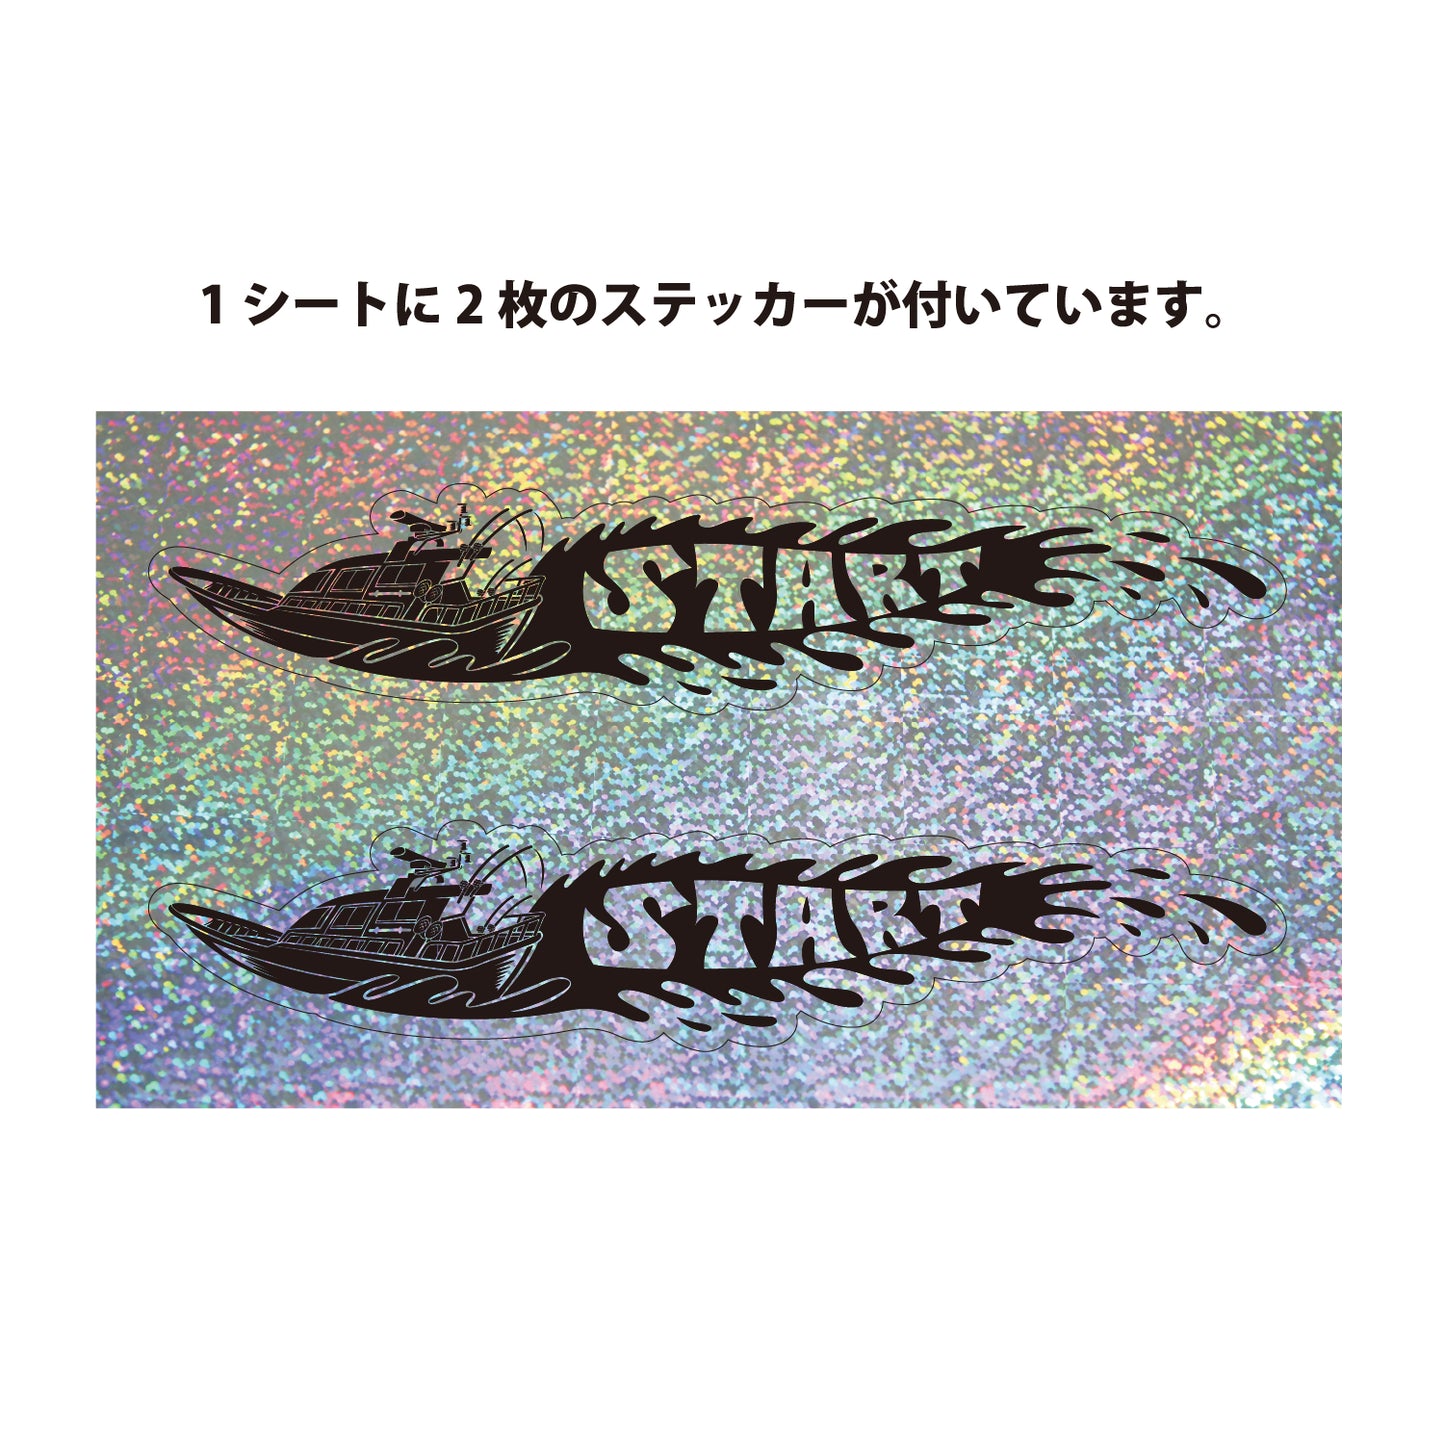 STARTキラキラボートステッカーS  2枚組(1シート)